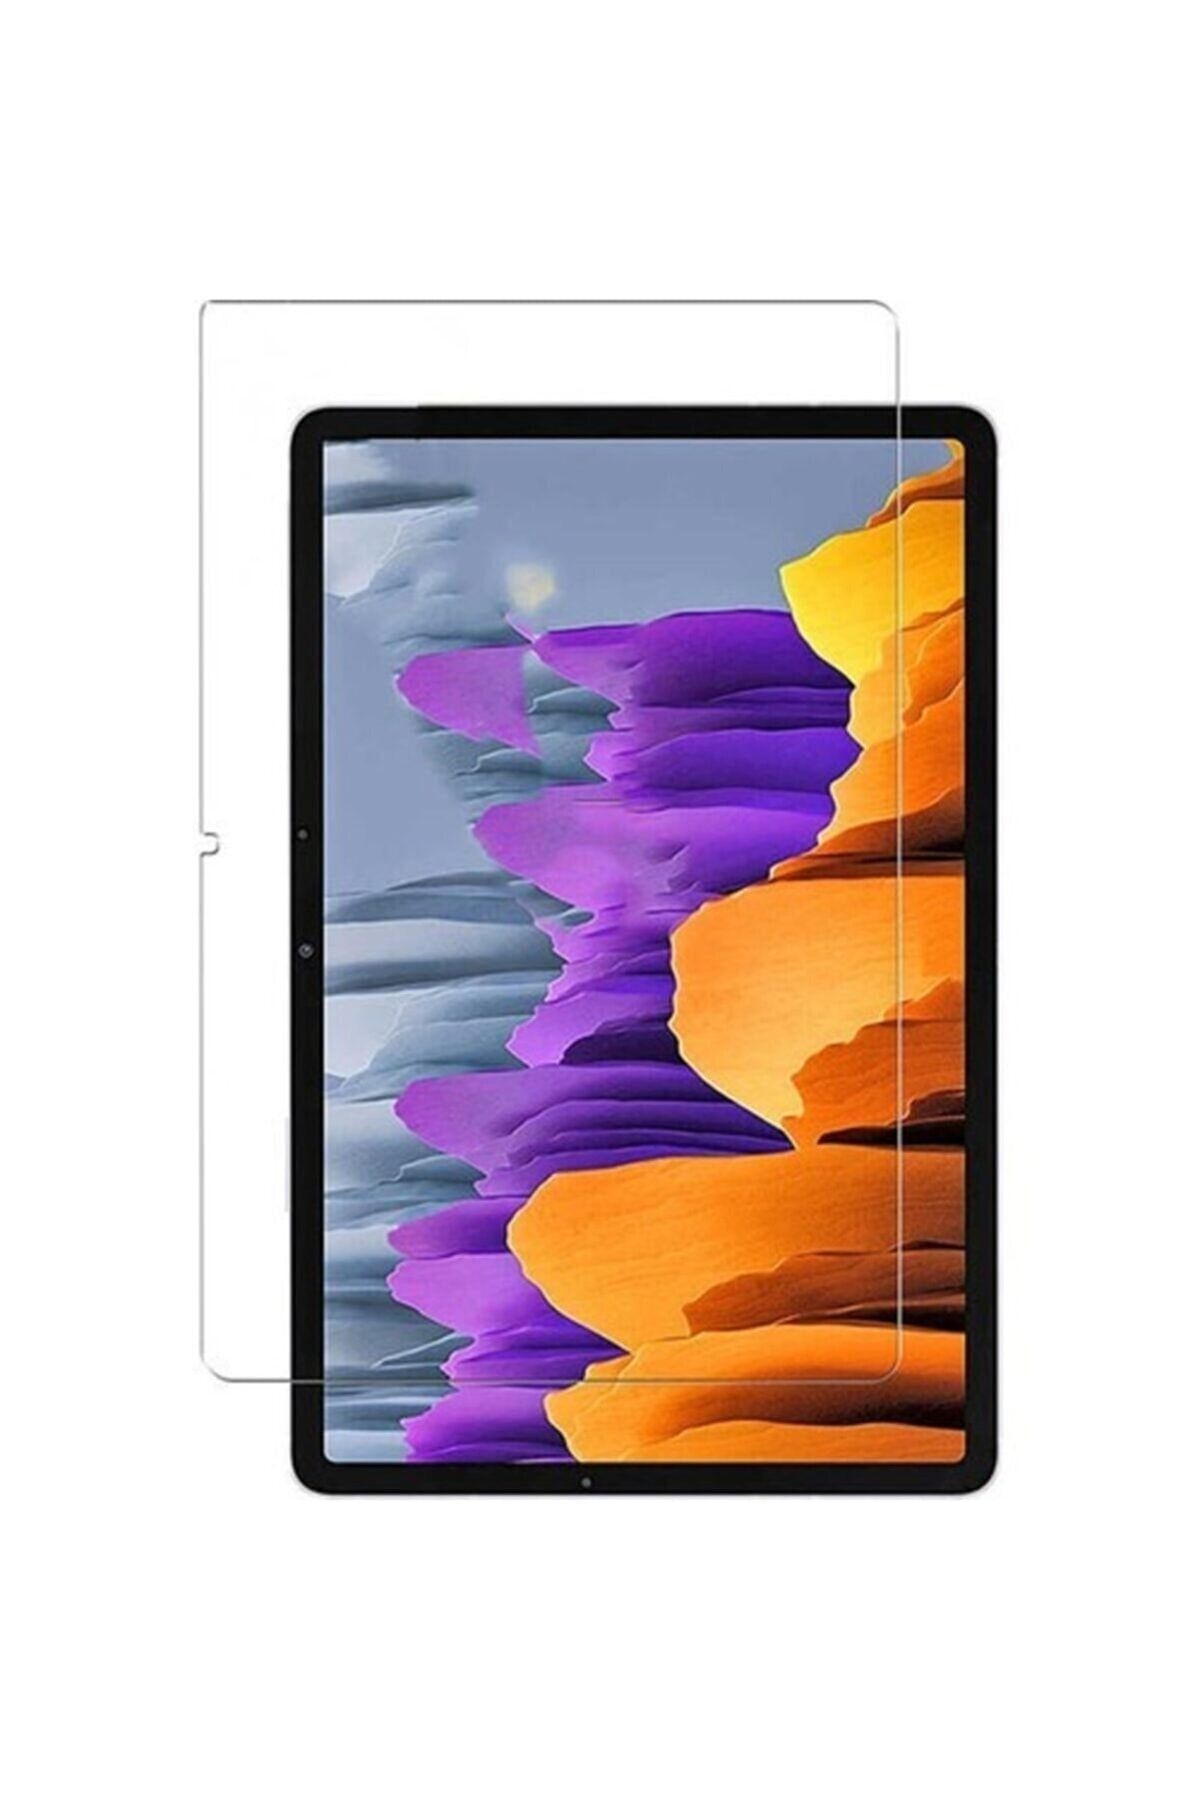 TEKNETSTORE Samsung P610/p620 Tab S6 Lite 10.4" Nano Kırılmaz Ekran Koruyucu Şeffaf Nano Cam Koruyucu Tam Uyumlu